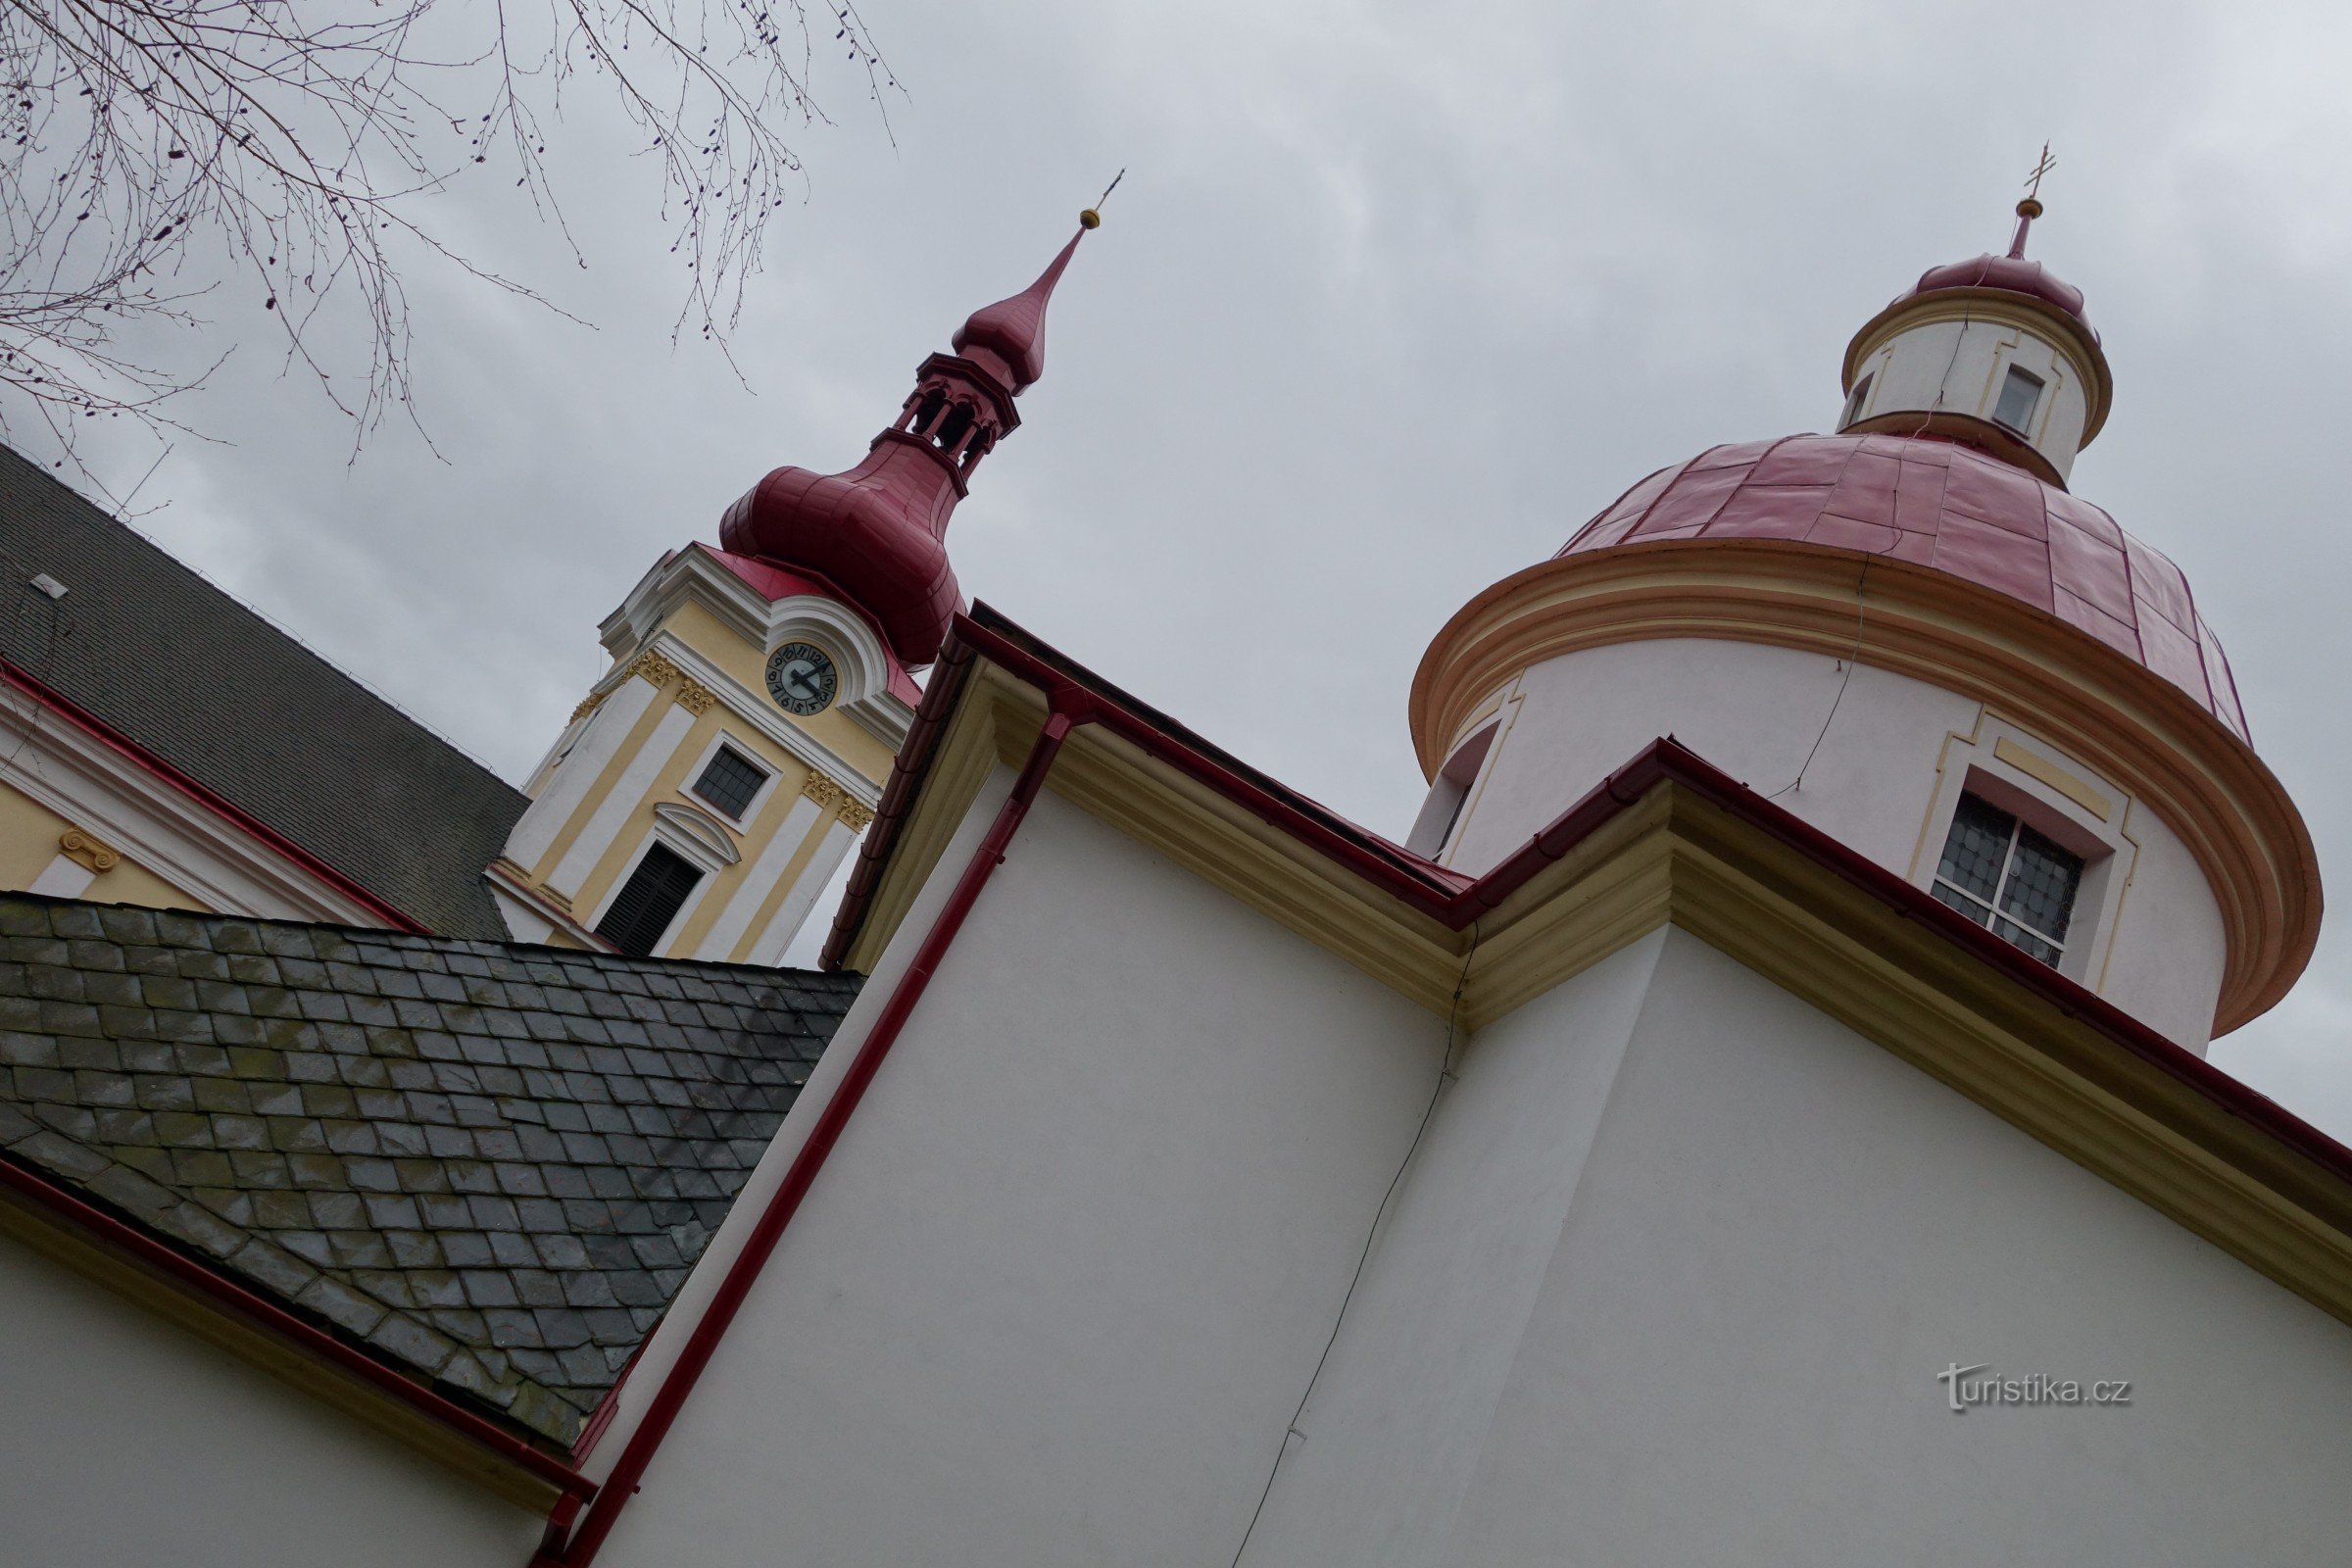 Pustiměř - rotunda św. Pantaleona, klasztor benedyktynów, kaplica św. Anny i kościół św. Benedykta